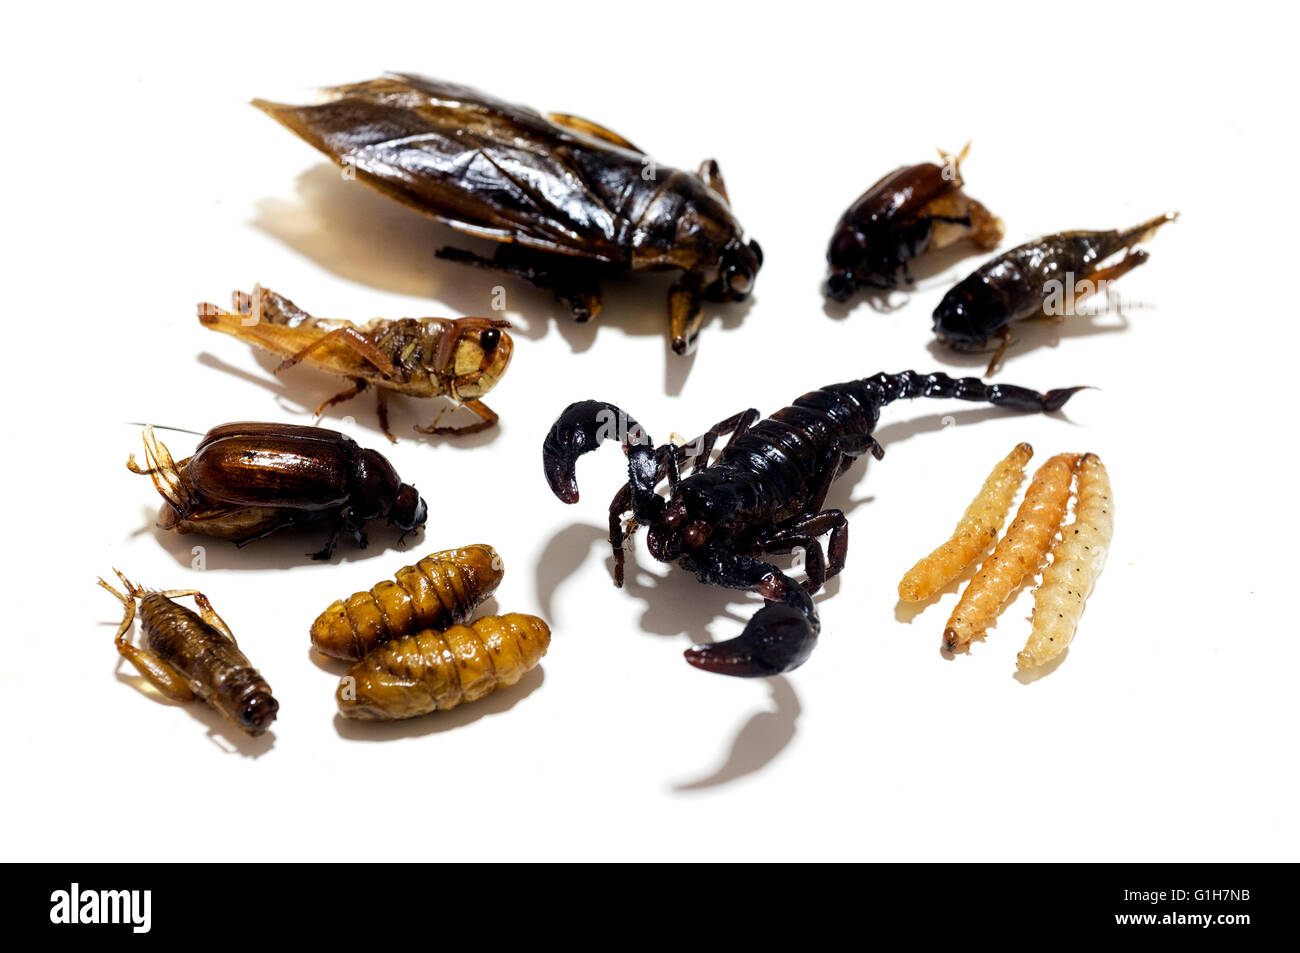 Les insectes comestibles frit sur un fond blanc Banque D'Images